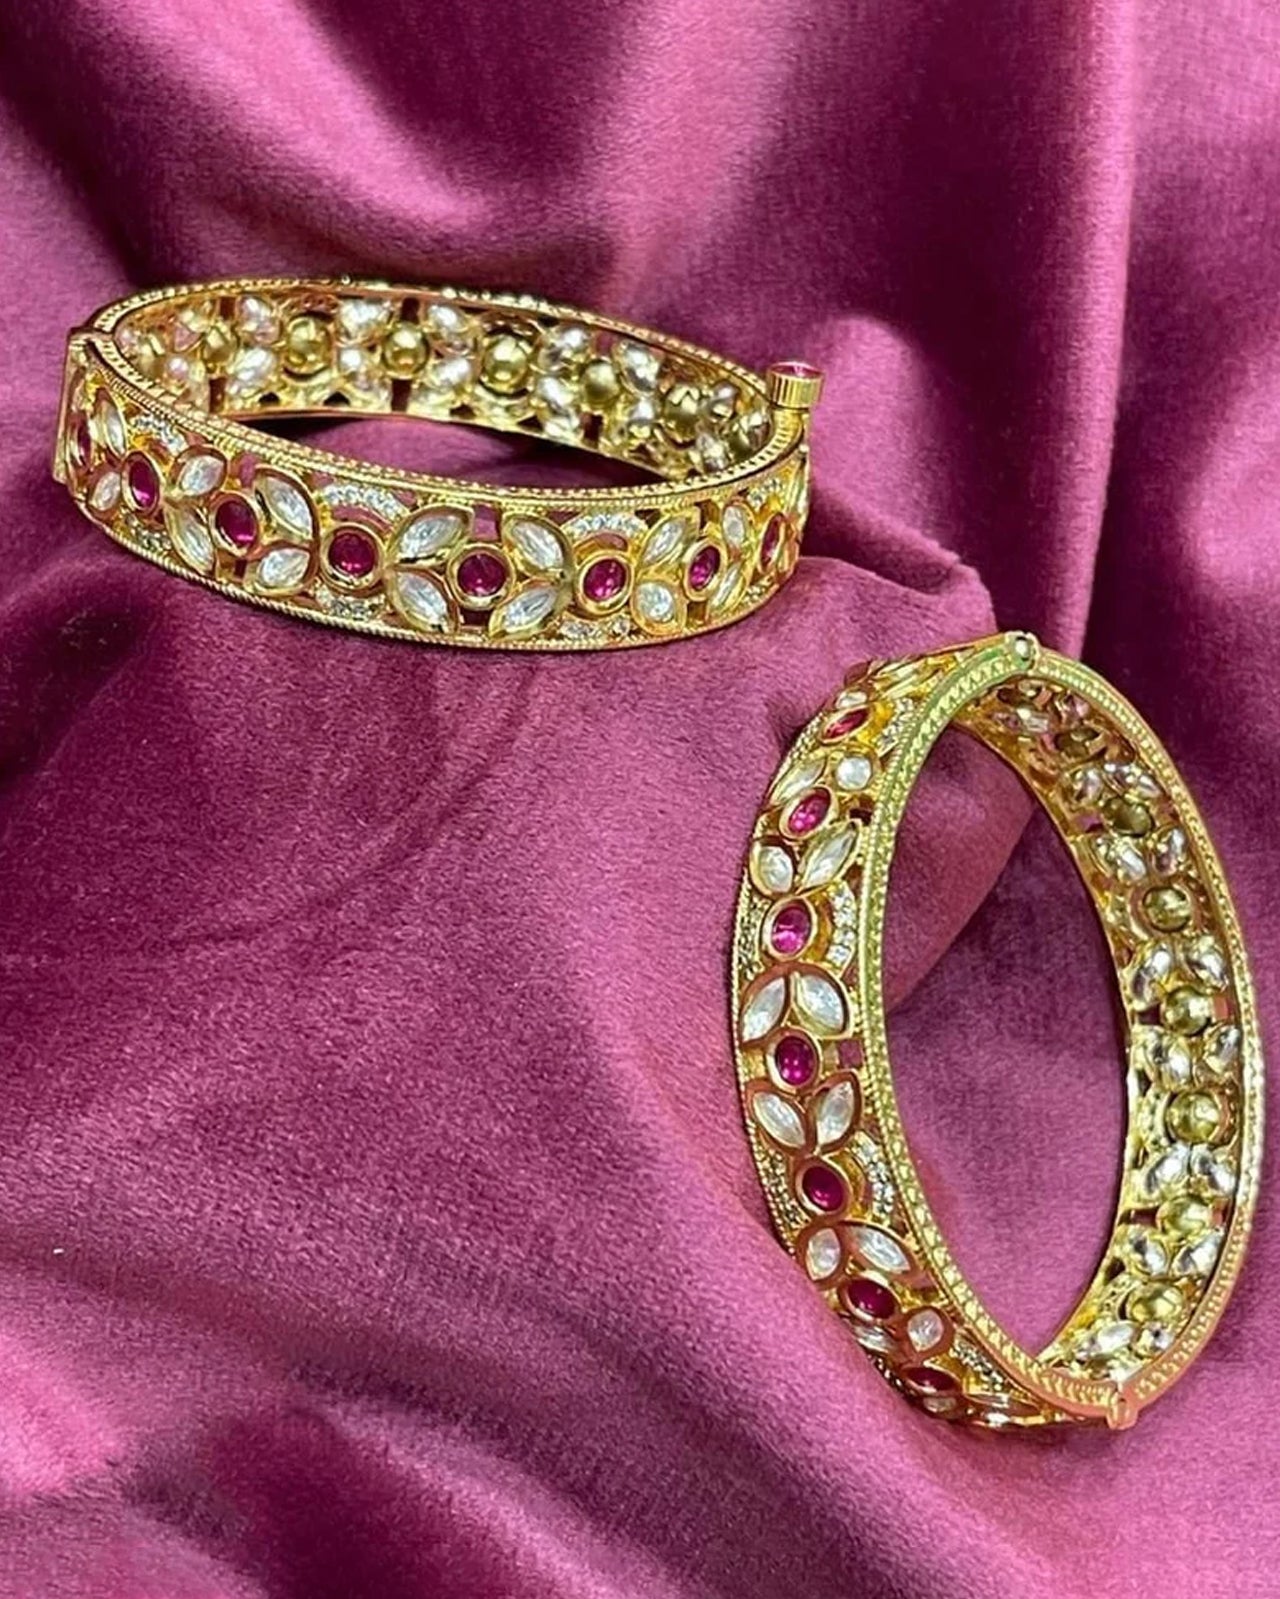 Gems Bracelets